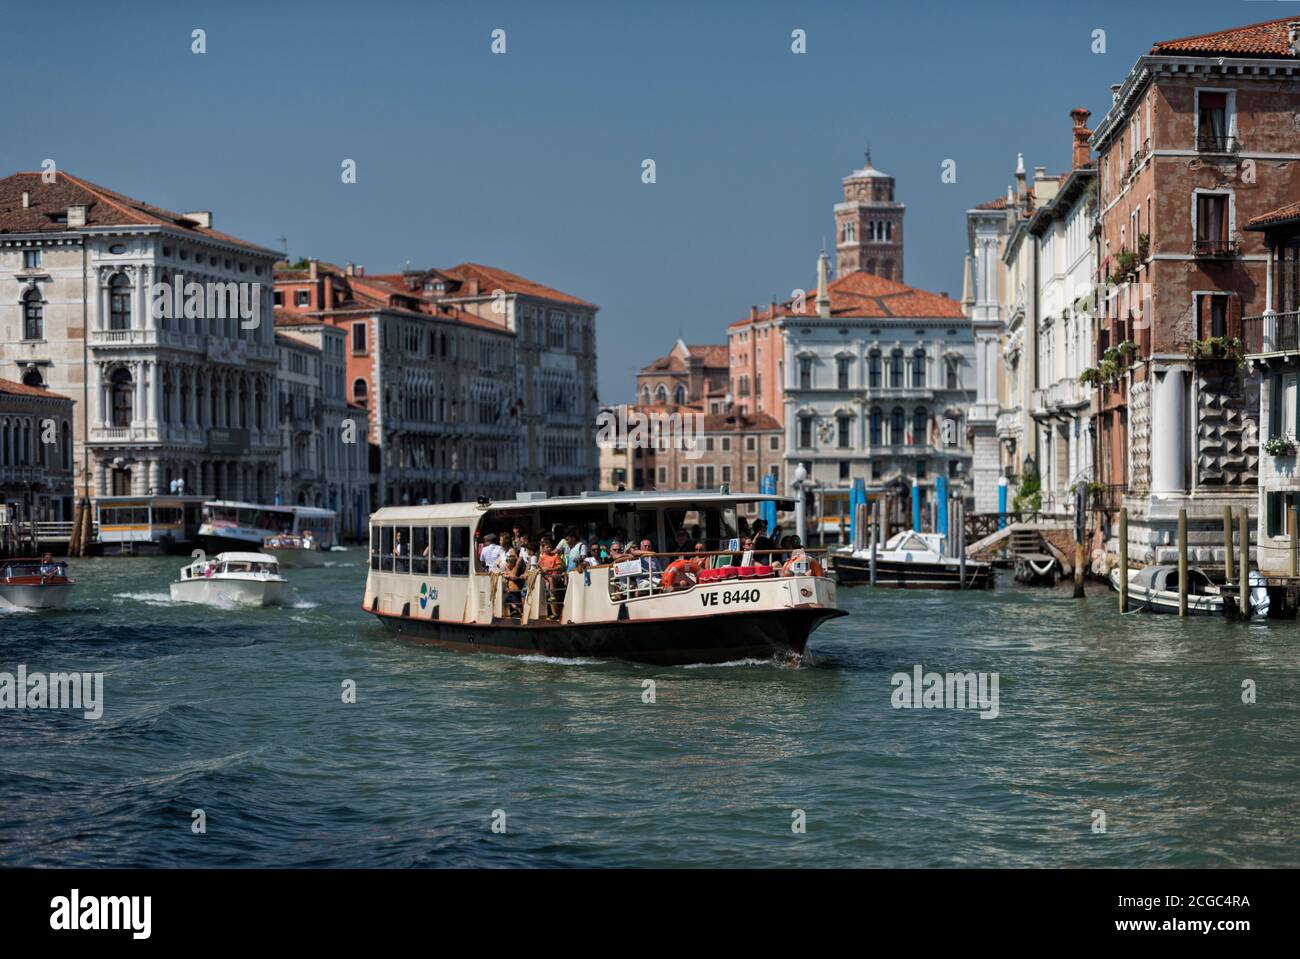 La vía acuática de Venecia con edificios vernáculos locales que salpican el frente acuático. Tiro tomado de un barco, mostrando uno de los autobuses acuáticos y locales de Venecia en sus barcos en el canal. Foto de stock